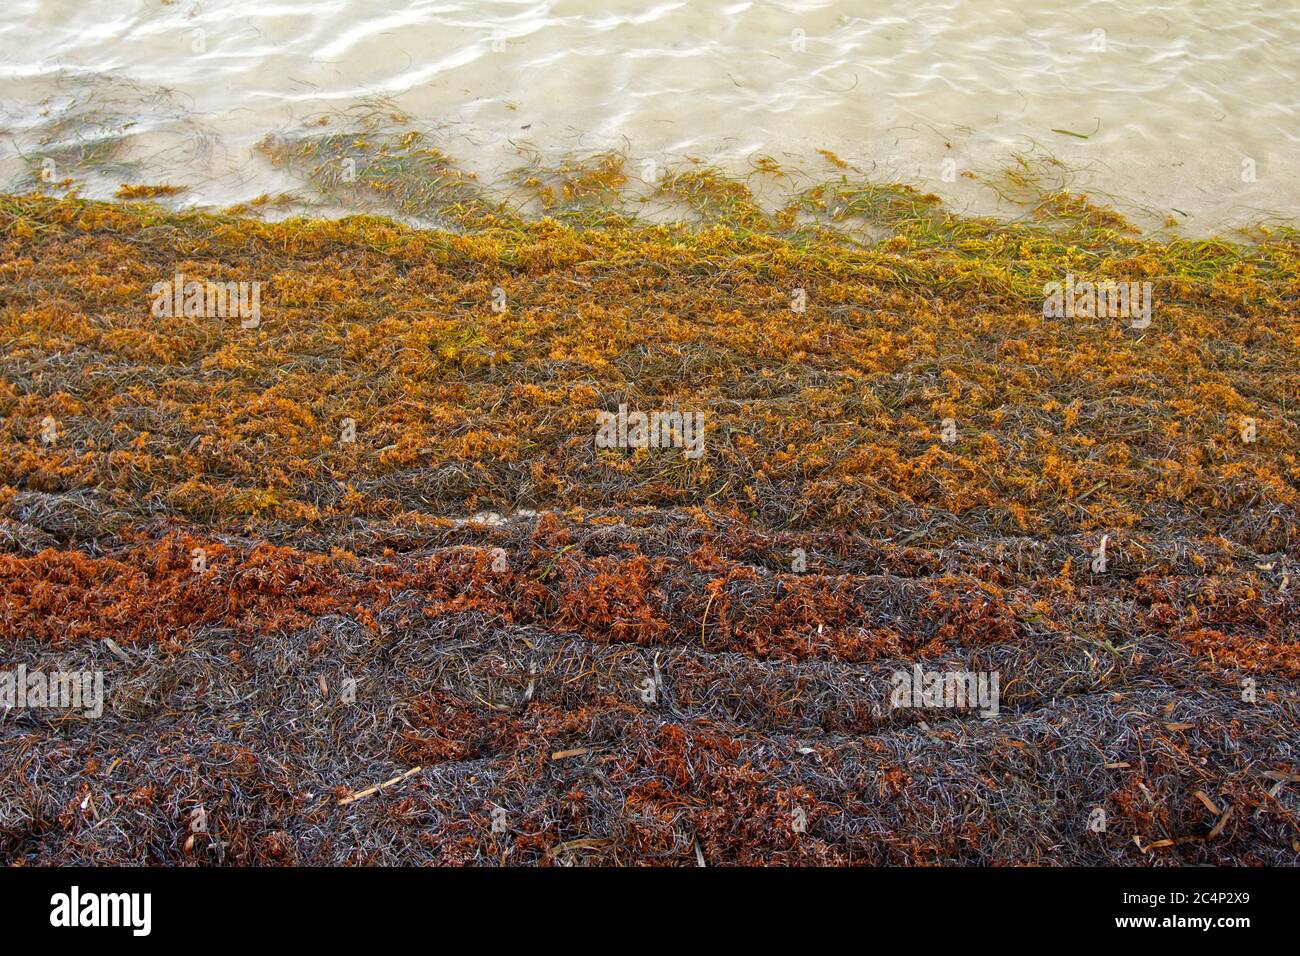 Am Strand von San Pedro, Ambergris Caye, Belize, stapeln sich Flöße von Seegras, Sargassum sp Stockfoto